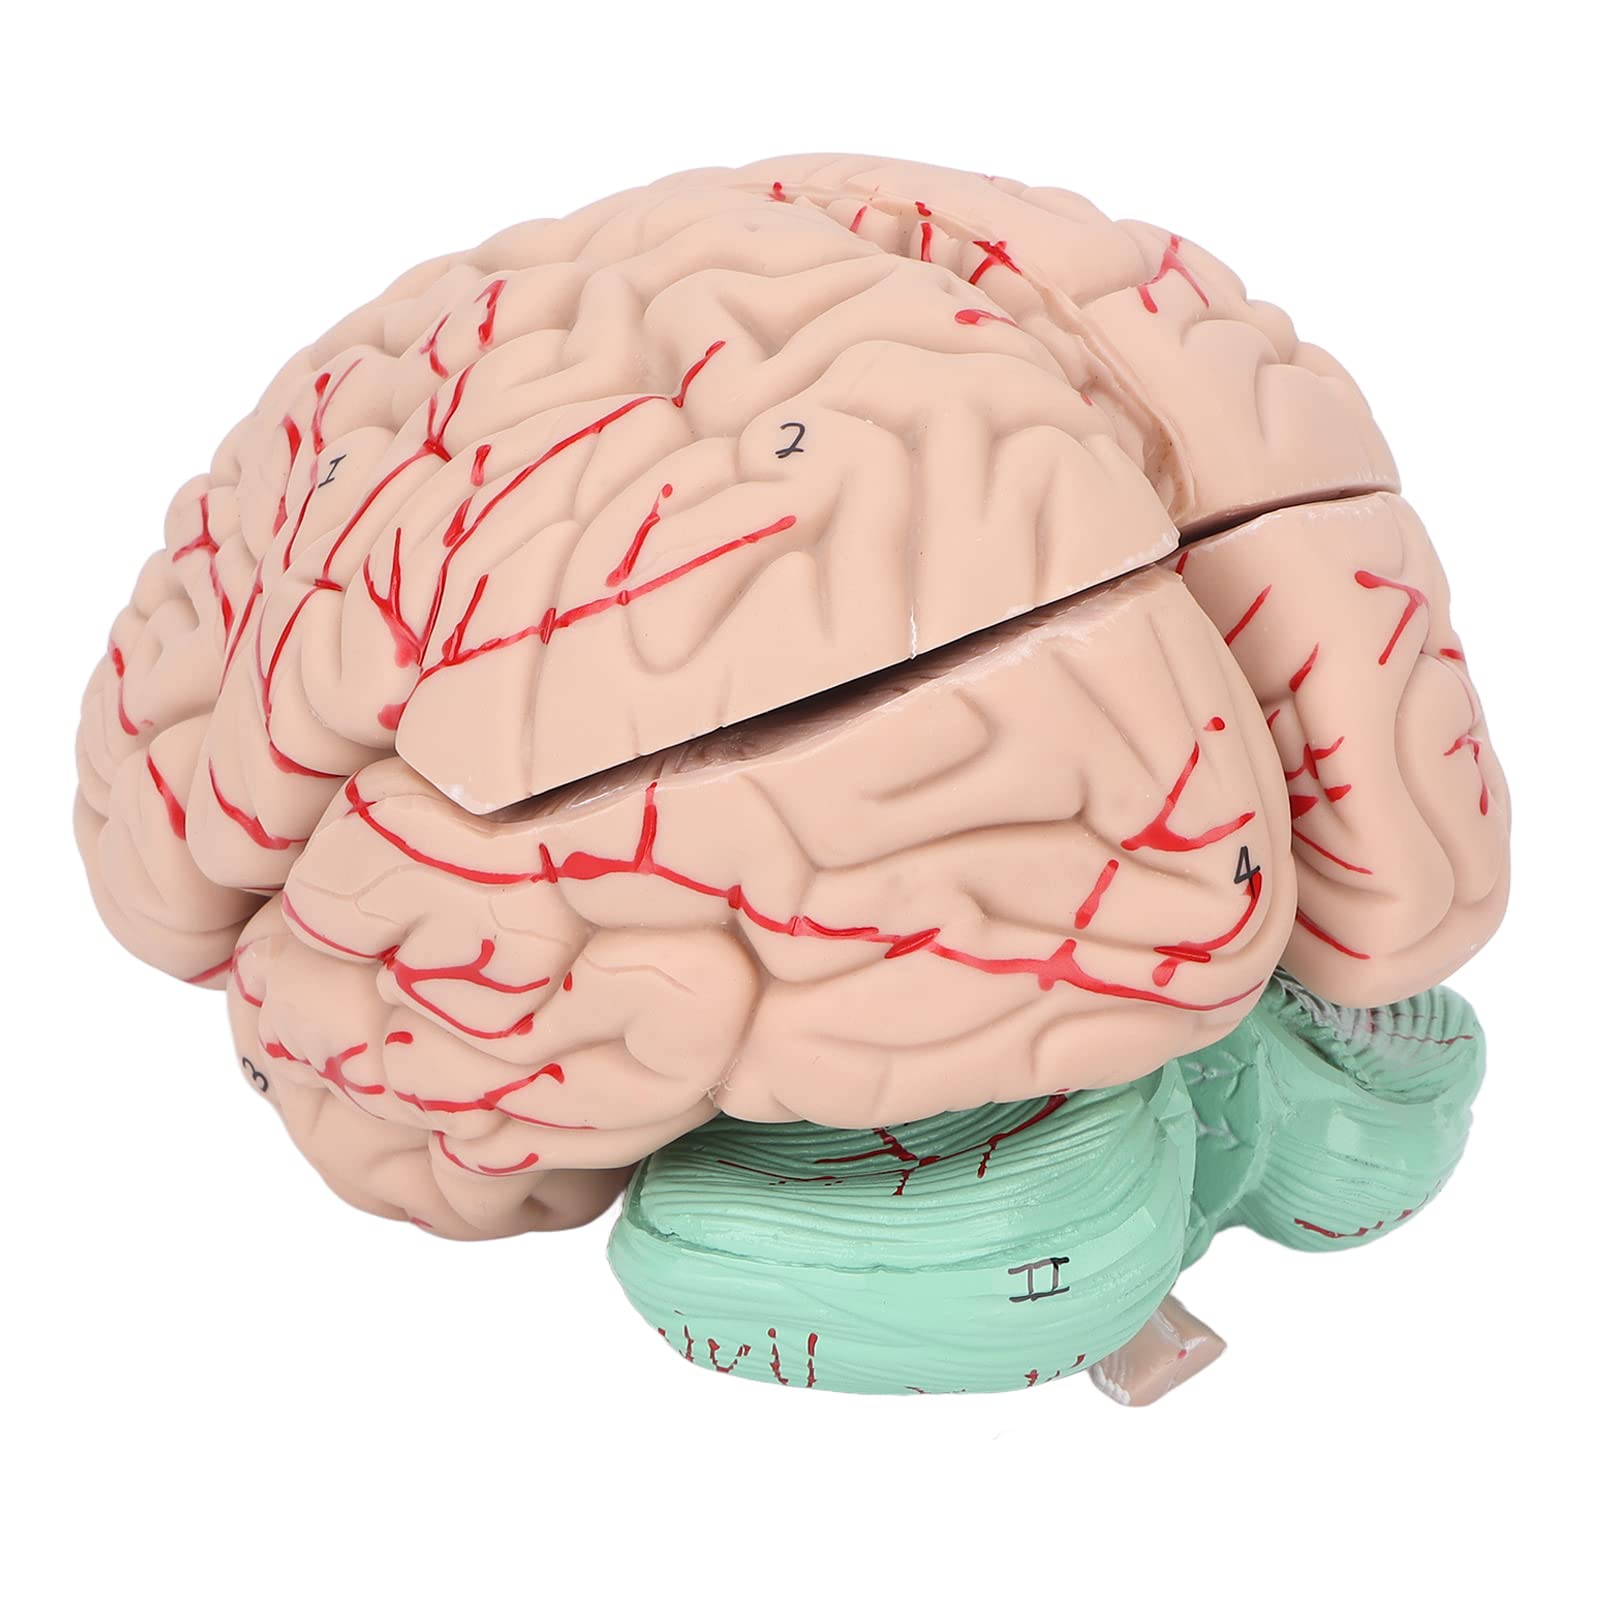 Gehirnmodell, detailliertes Modell der Gehirnanatomie, abnehmbares PVC für Studienvorträge